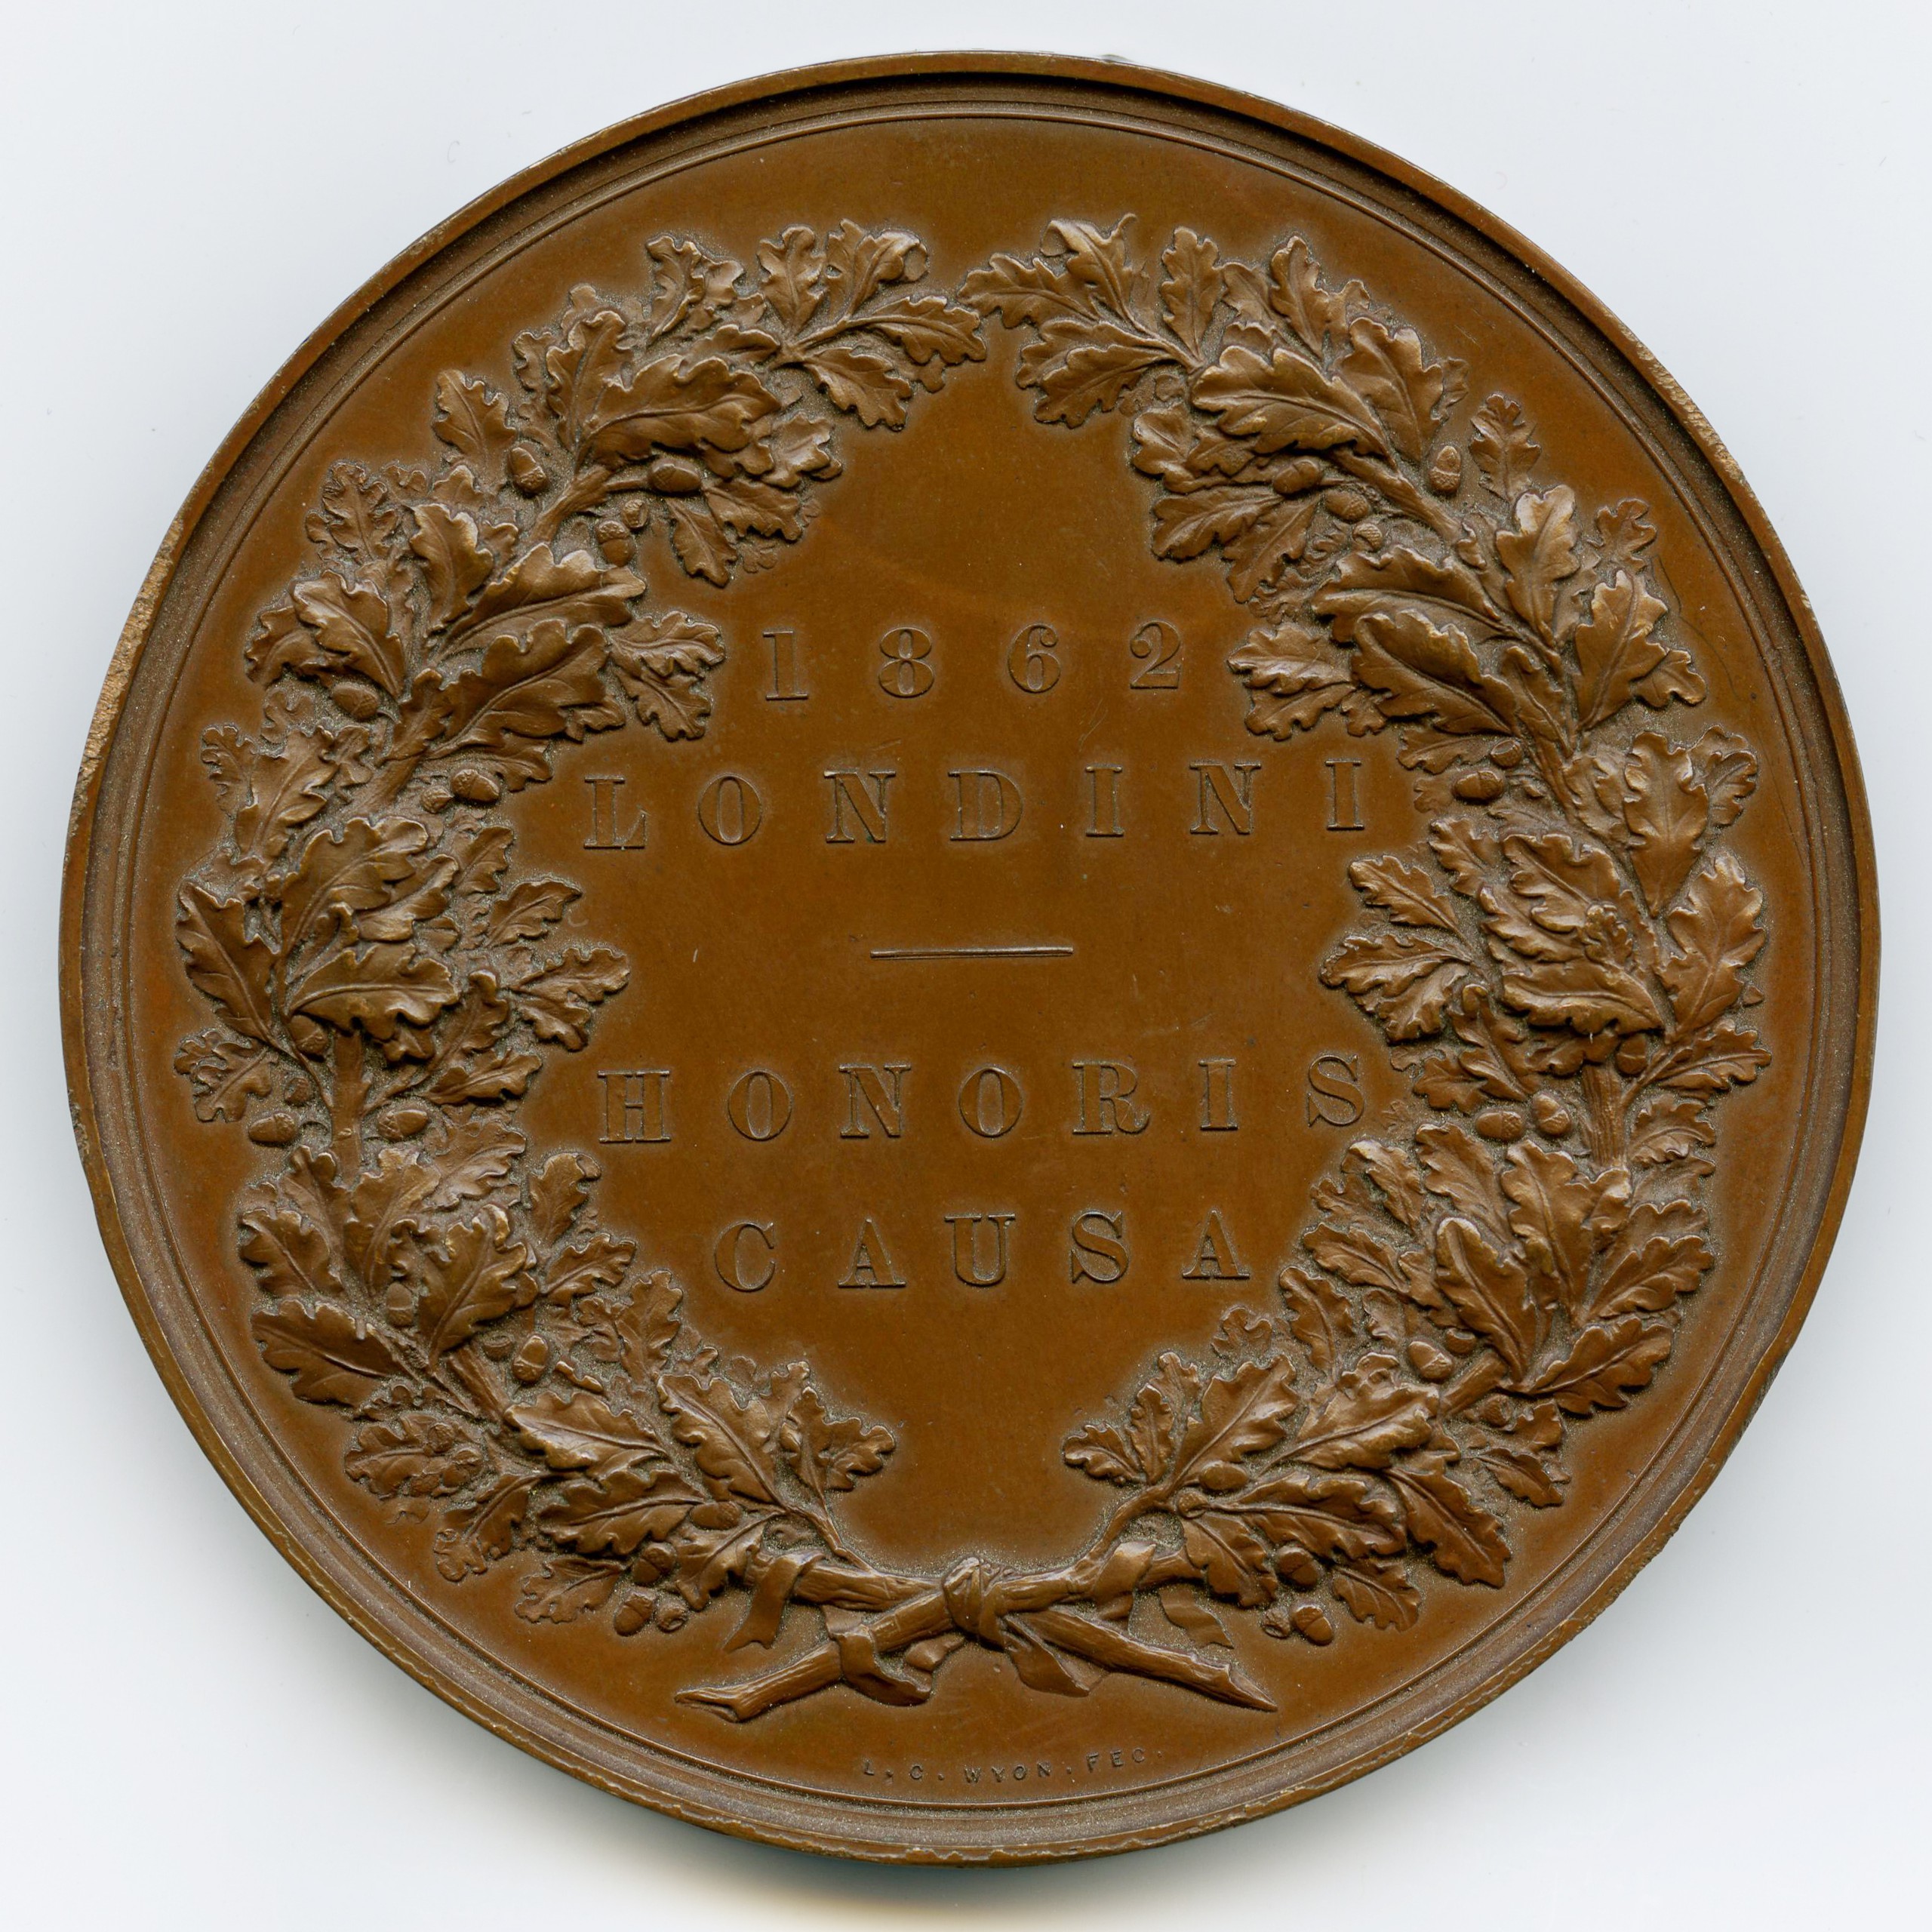 Londres - Médaille bronze - 1862 revers